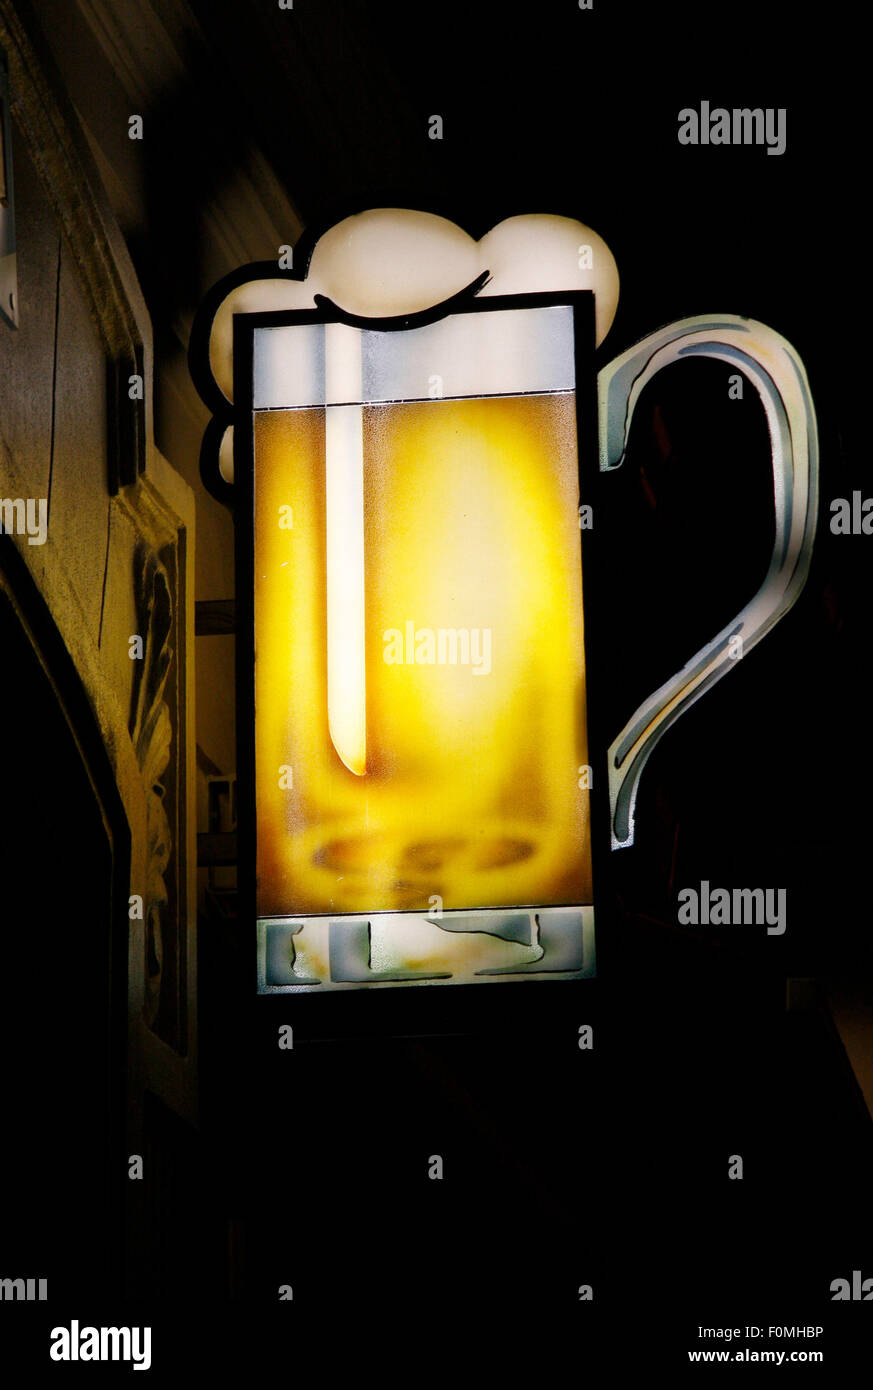 Mai 2008 - BERLIN: eine elektronische Unterschrift für eine Bar mit einem Glas Bier, Berlin. Stockfoto